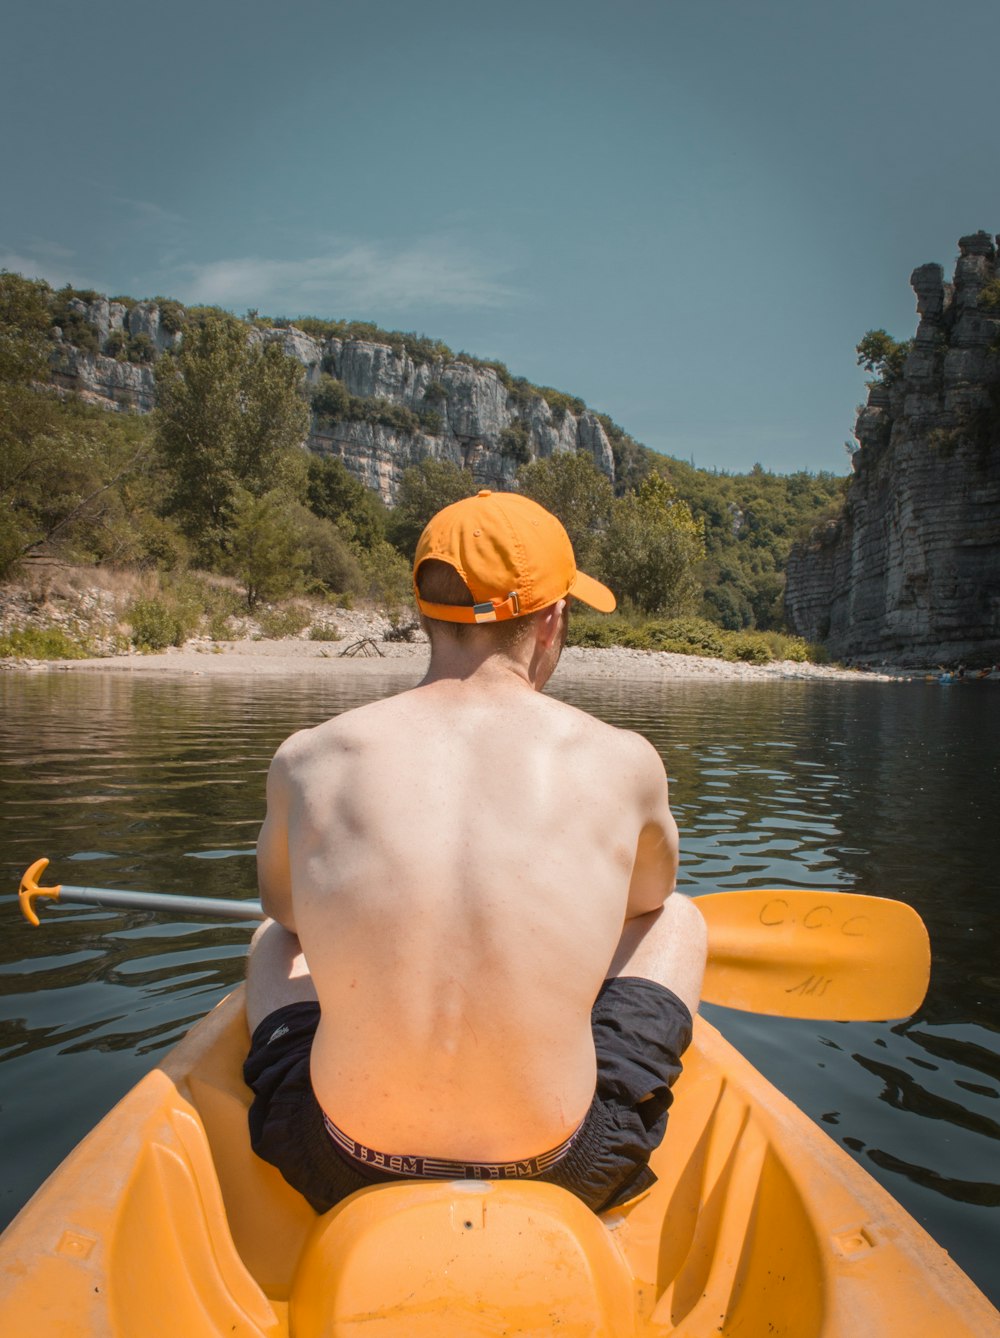 topless man wearing orange and black shorts riding orange kayak on lake  during daytime photo – Free France Image on Unsplash